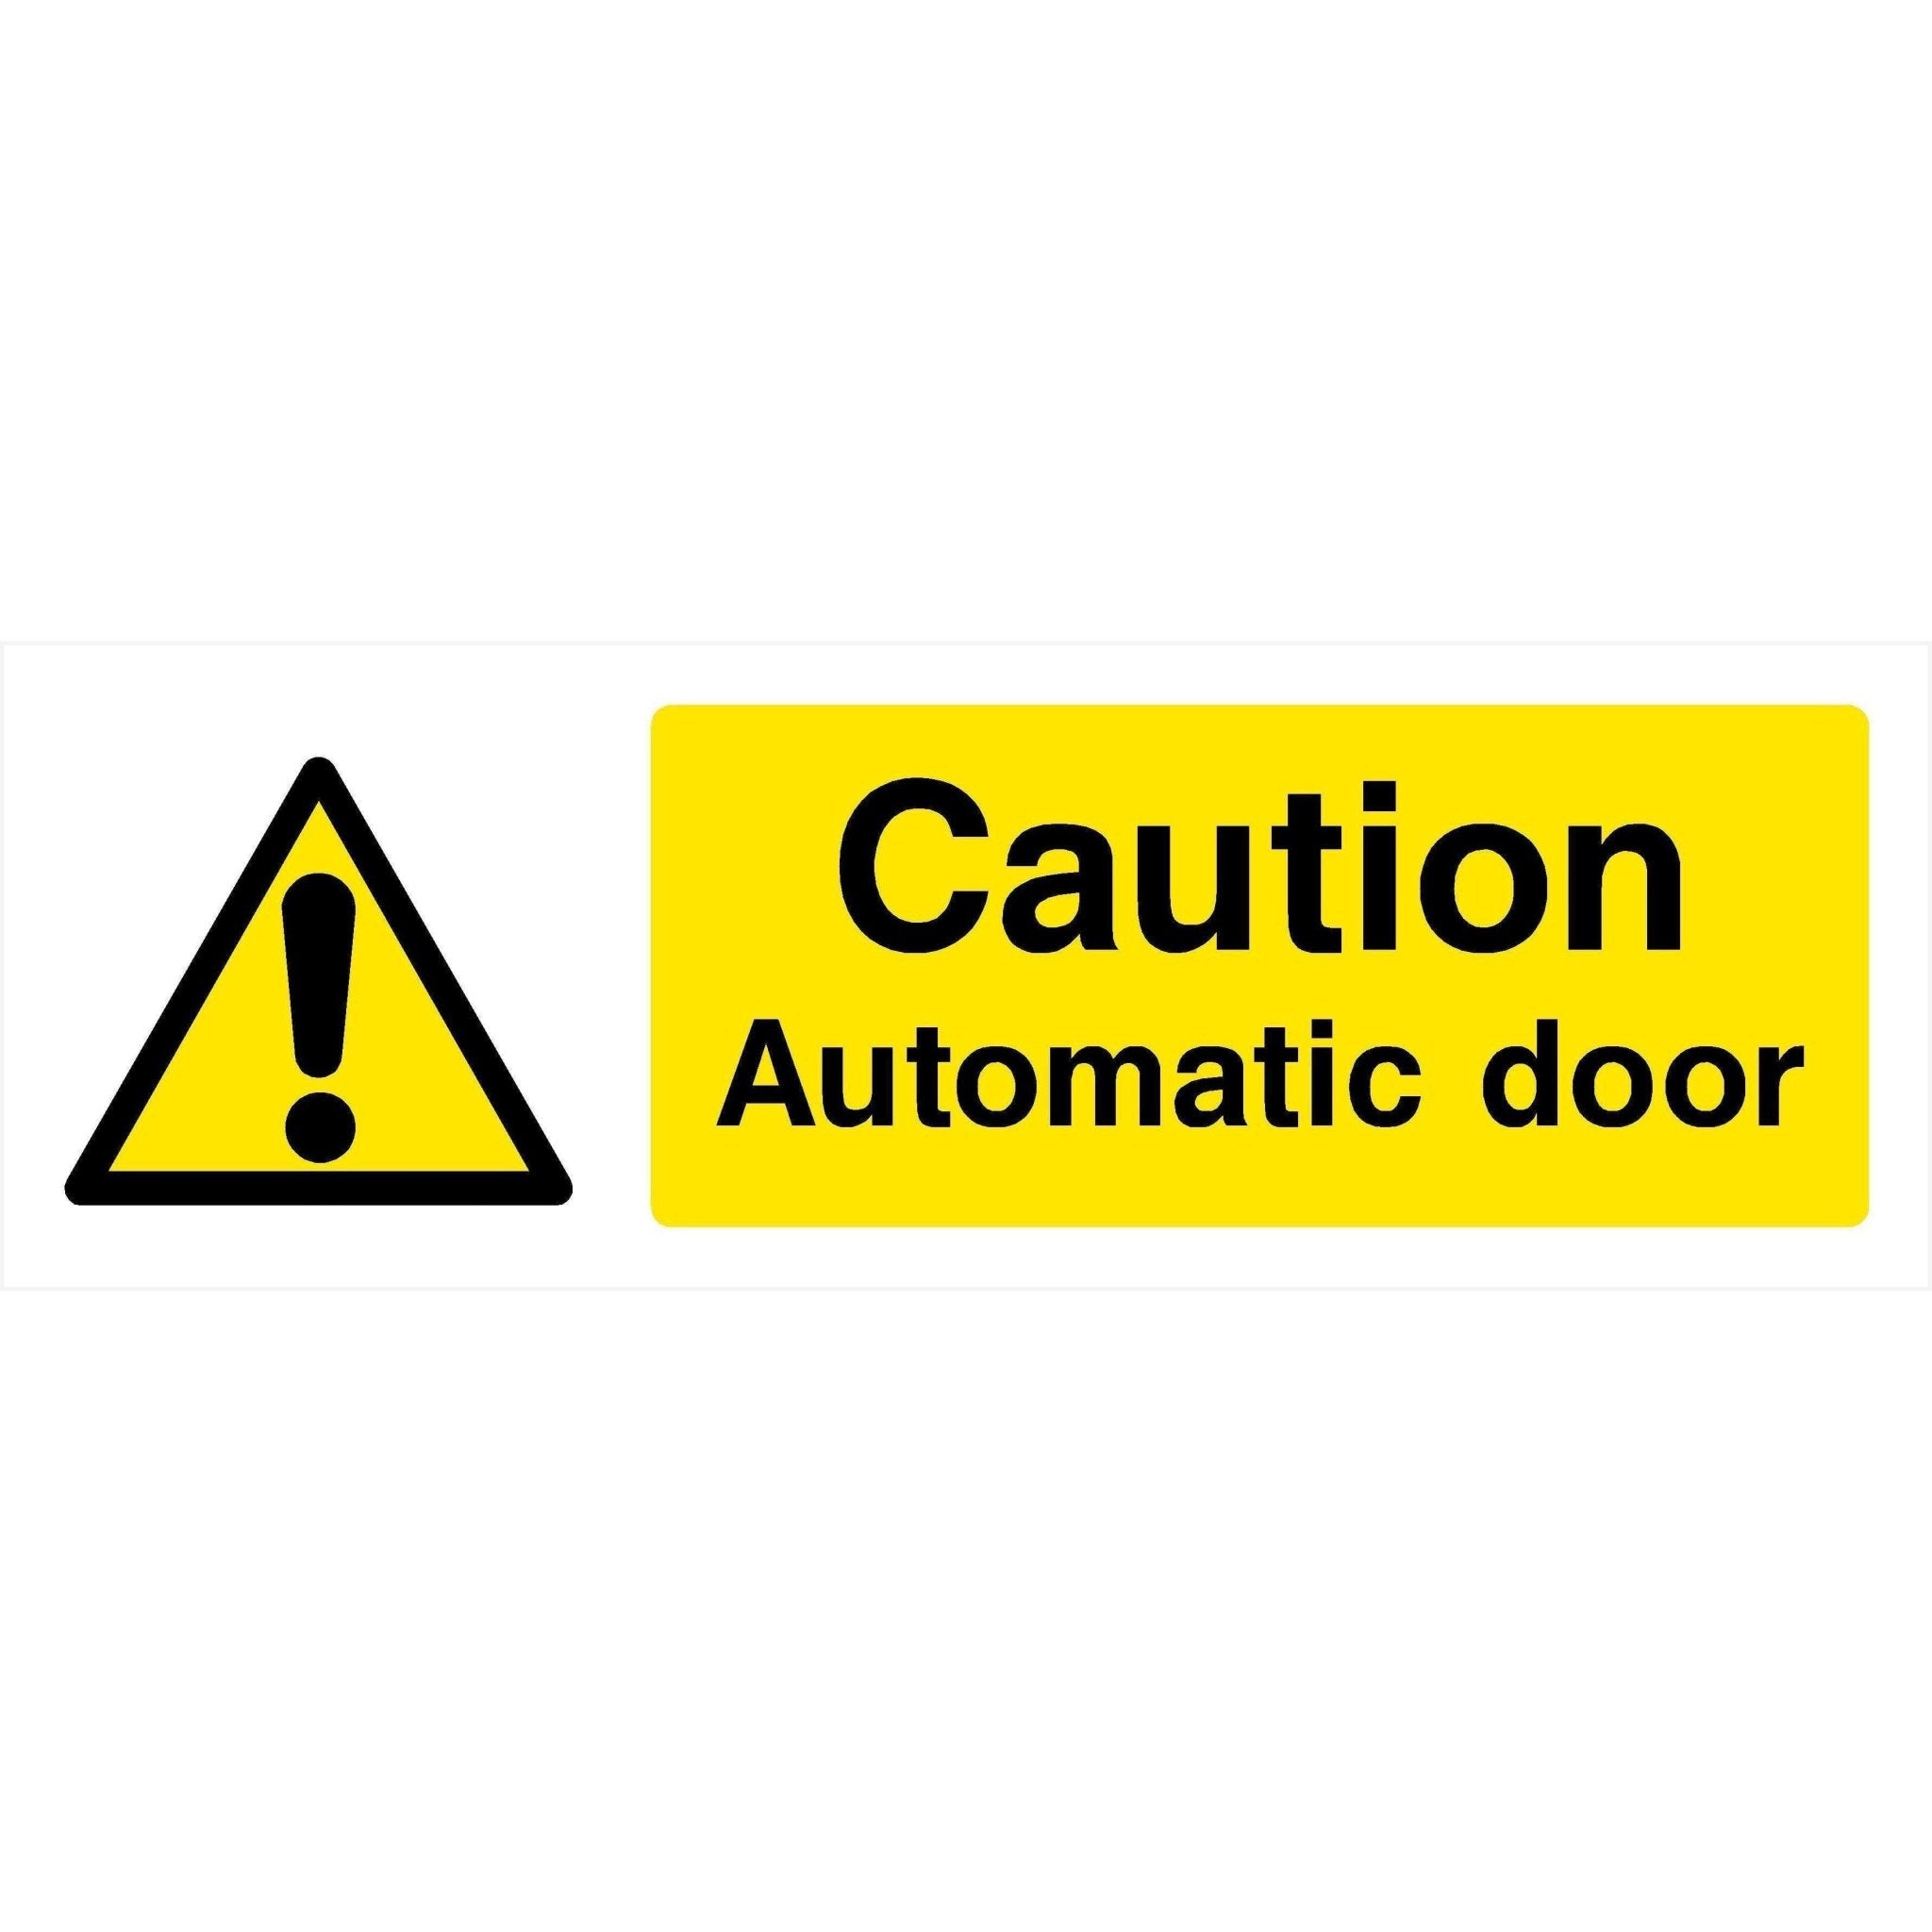 Automatic Door Sign